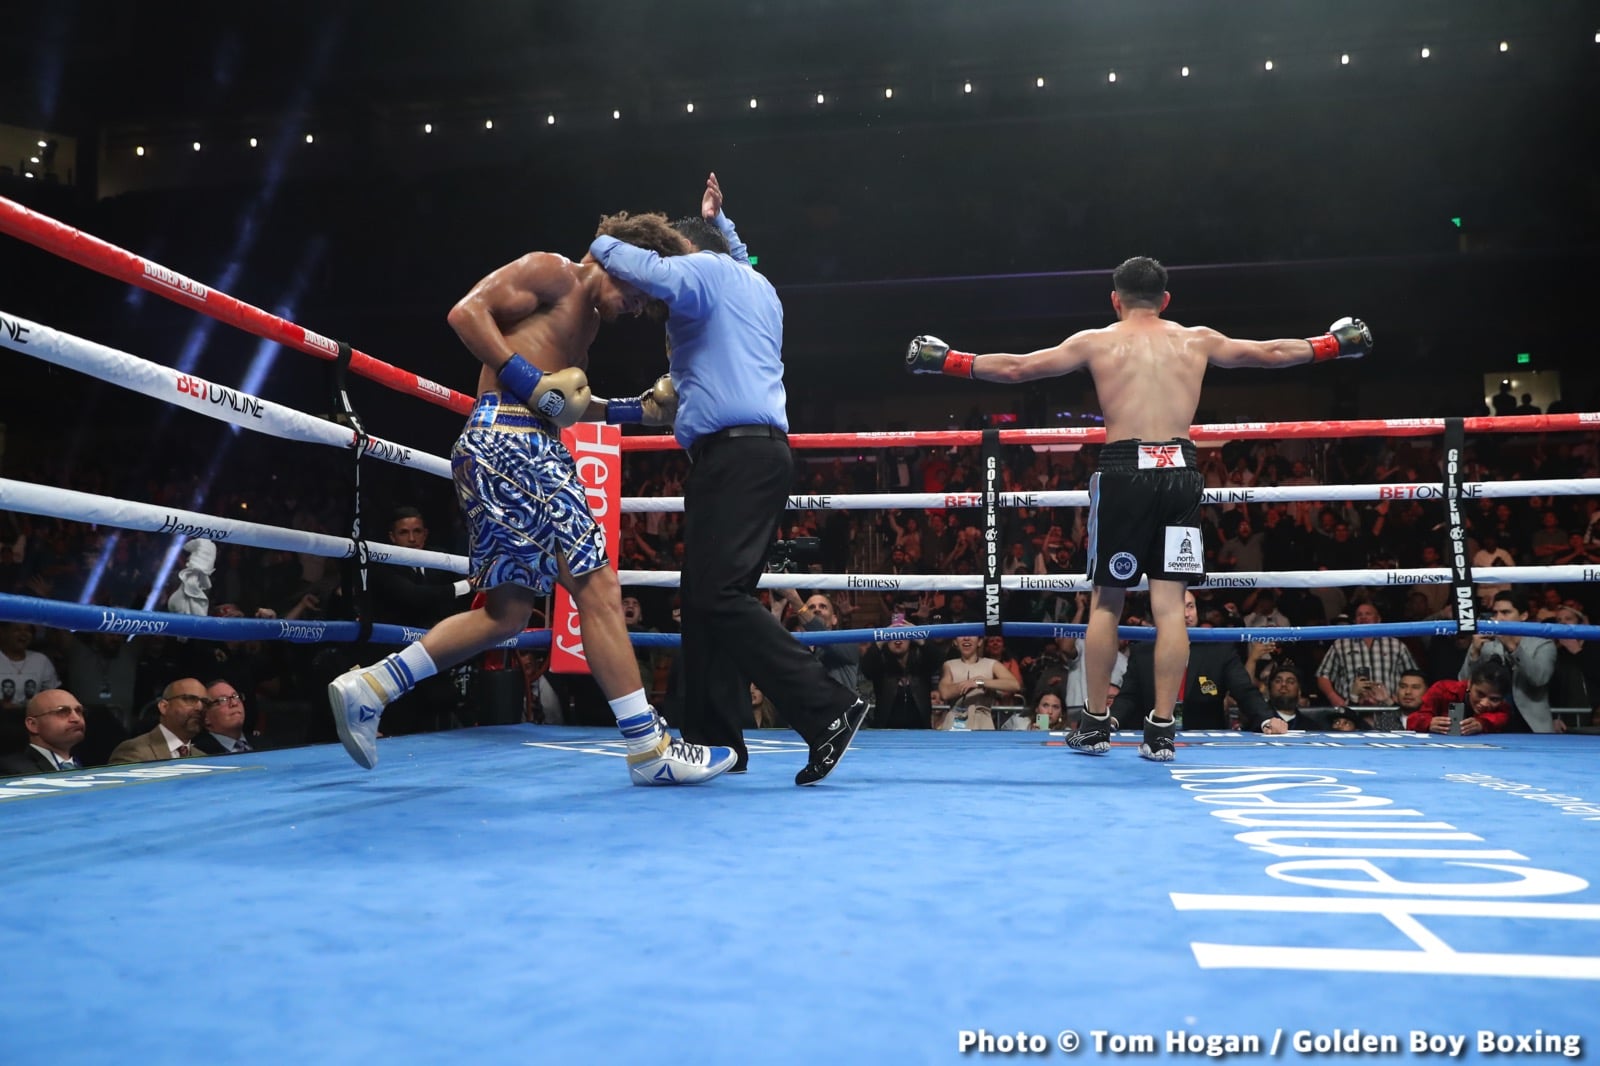 Photos: Rocha destroys Cobbs; McKinson beats Martin